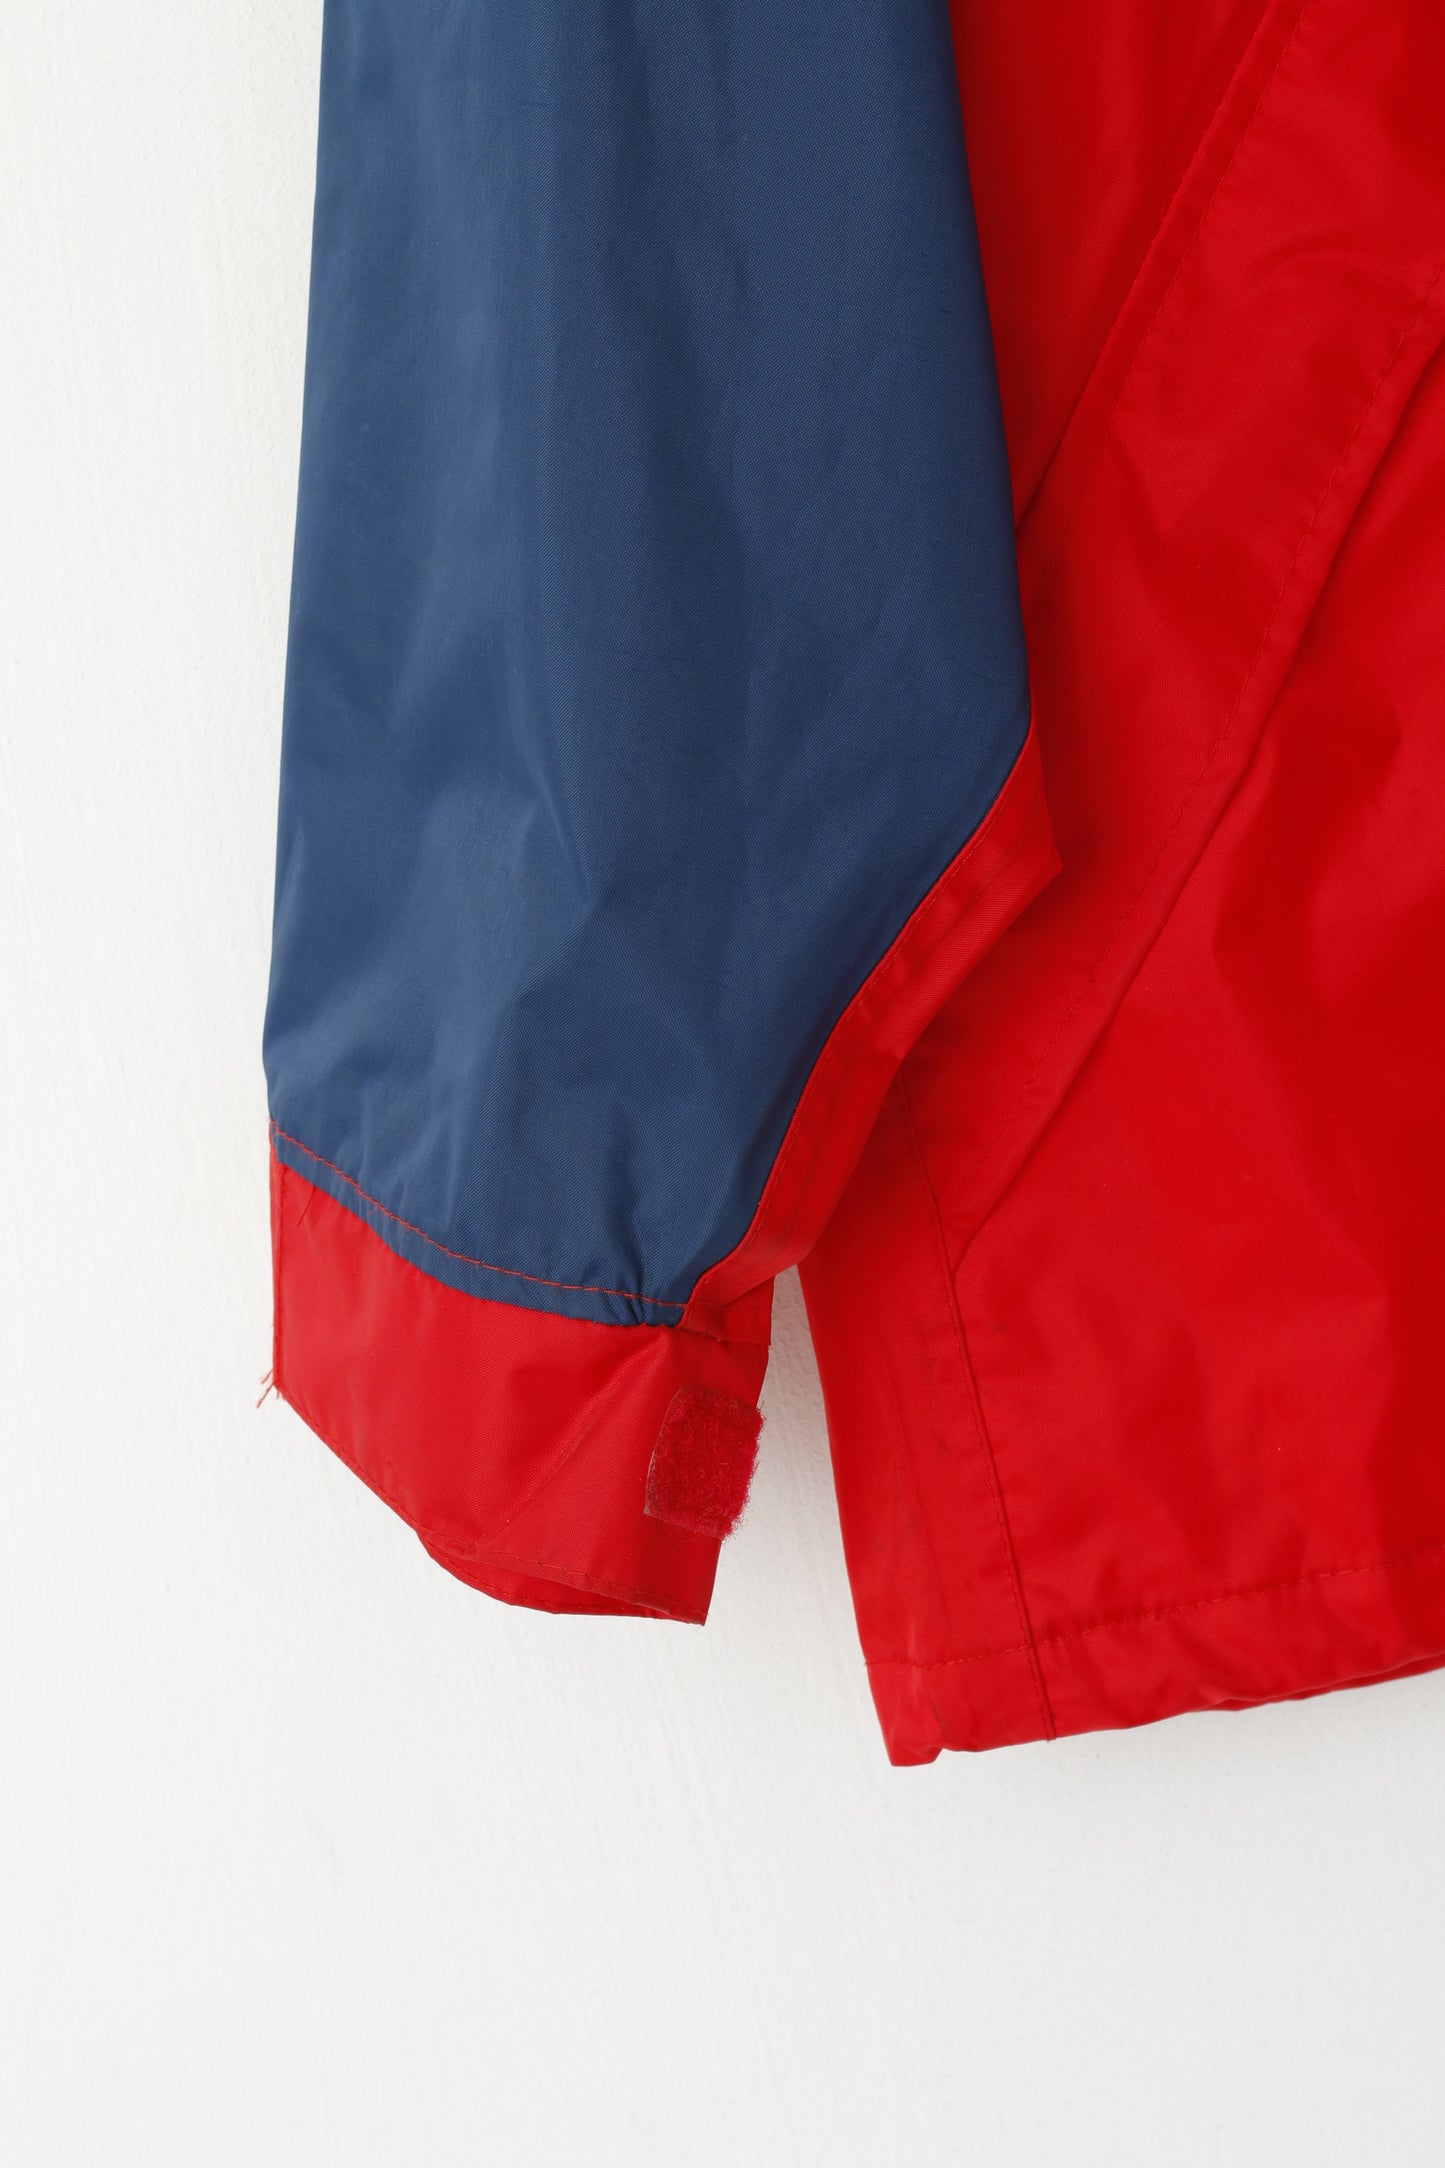 Etirel le Sportif Youth 164 Jacket Navy Red Nylon PVC Waterproof Hidded Hood Top